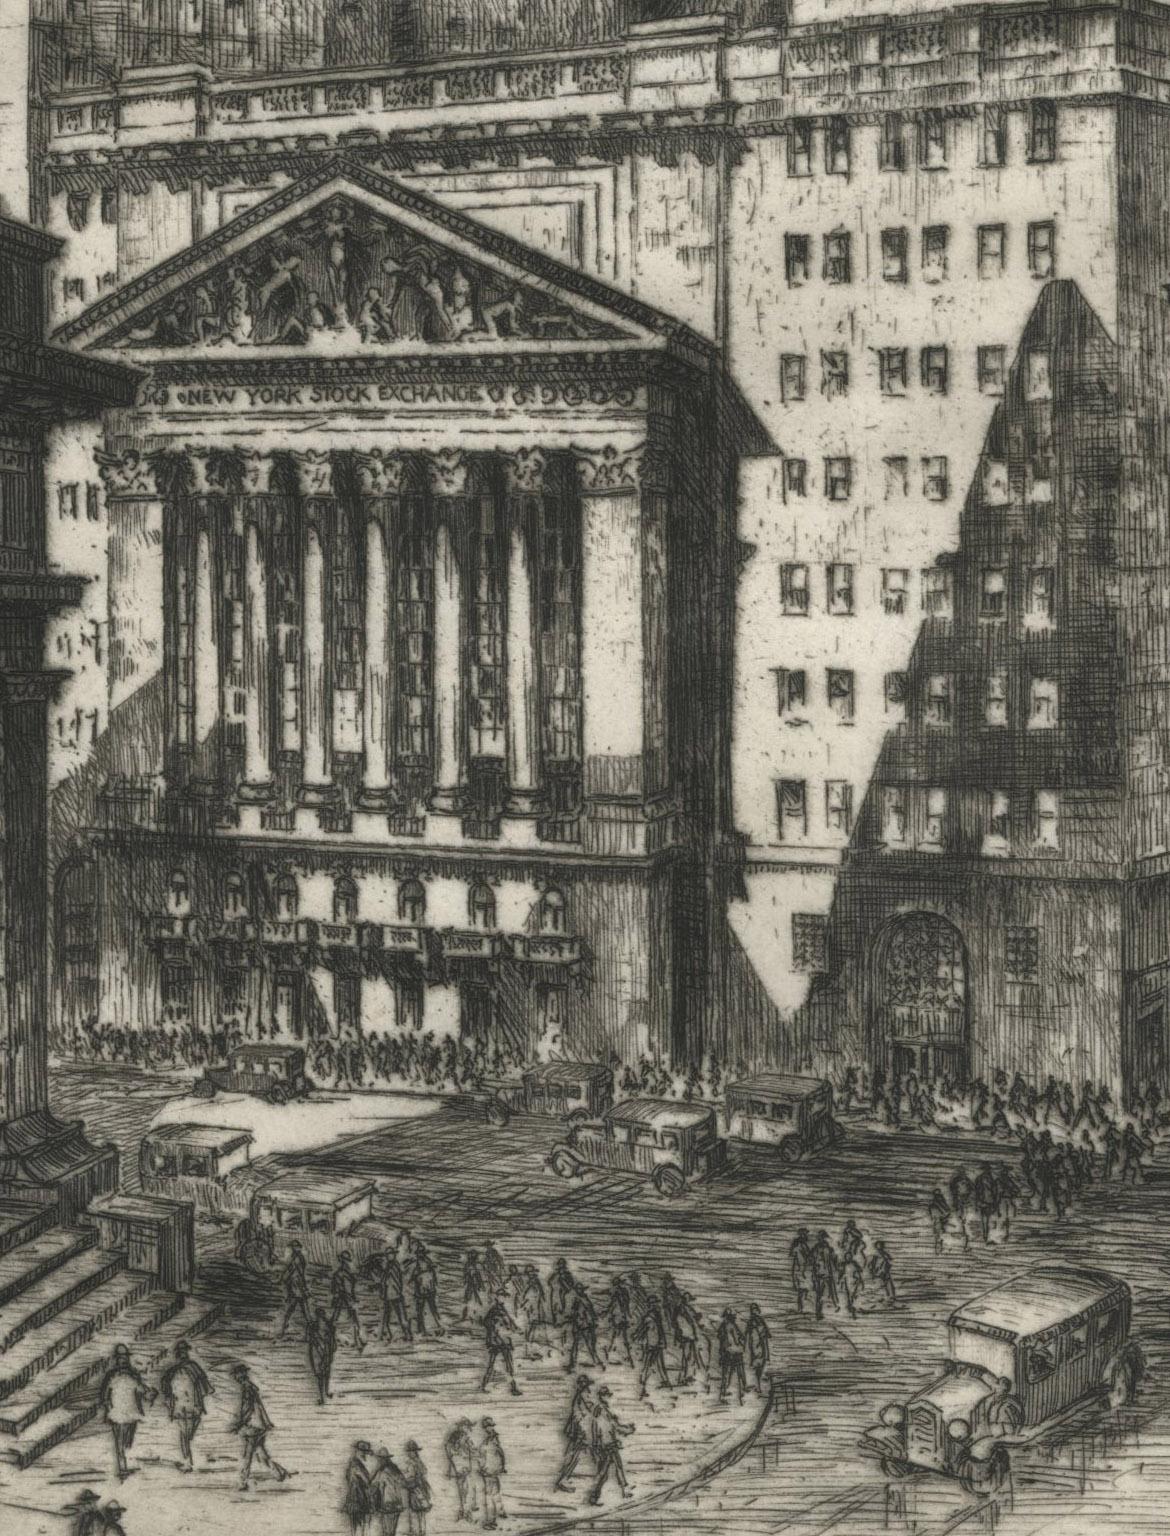 New York Stock Exchange - Print by Anton Schutz